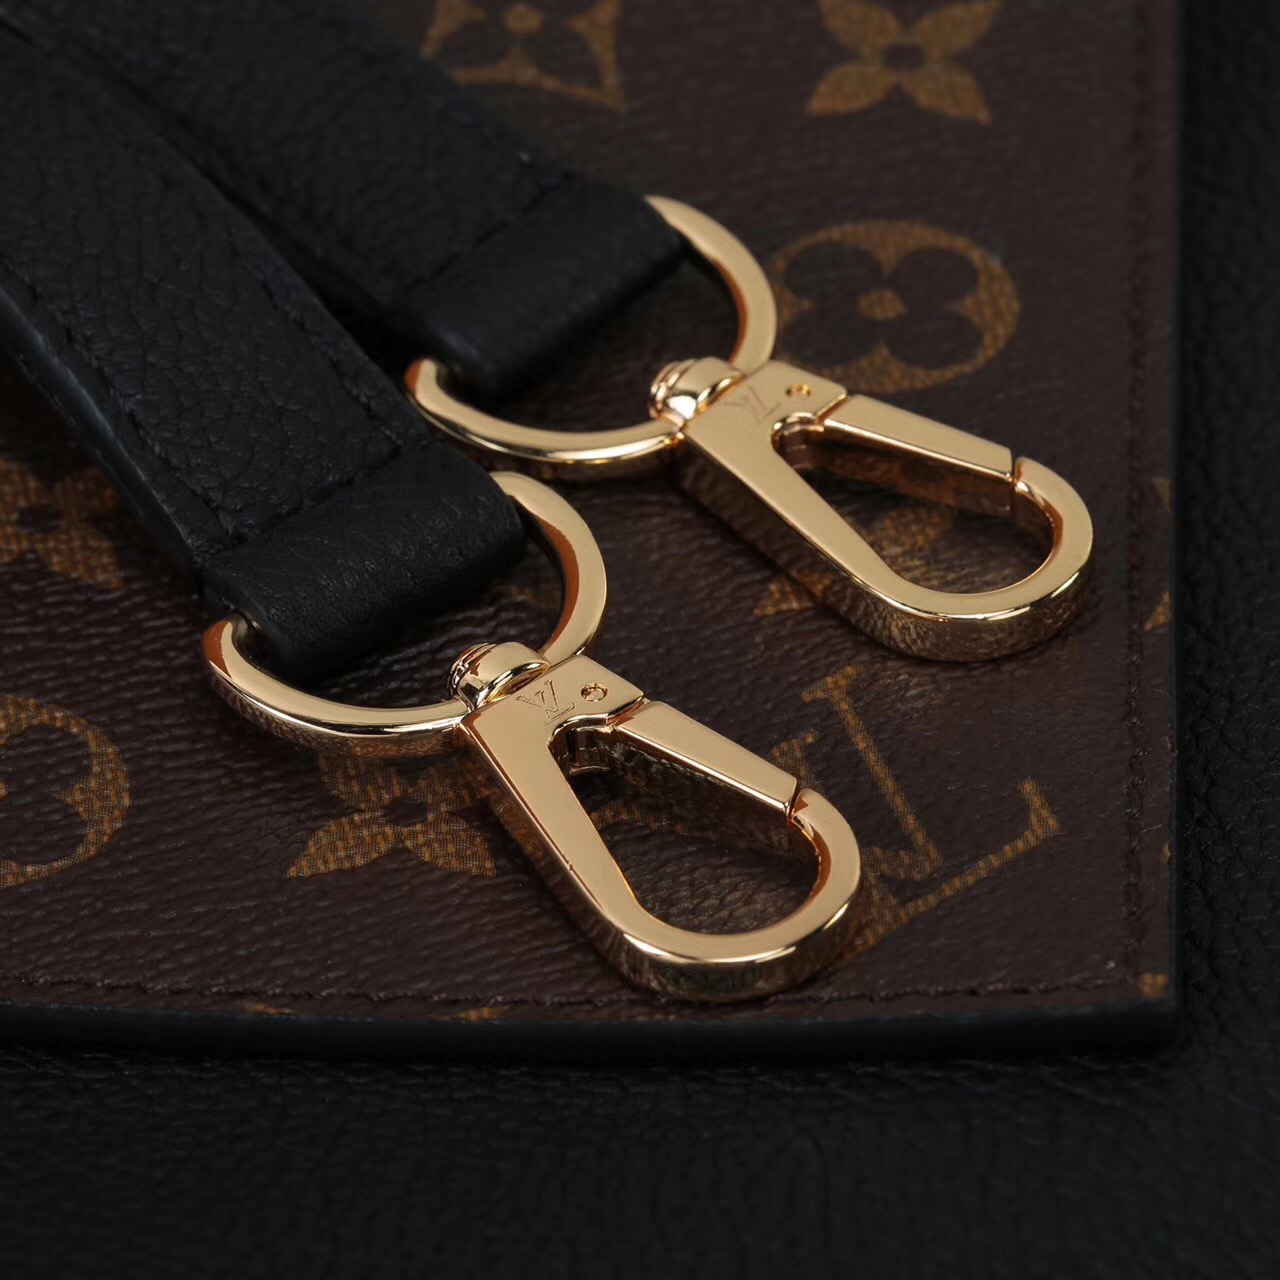 LV Louis Vuitton Monogram Double V Handbags Shoulder M54439 Leather bags Black [LV1060] - $389 ...